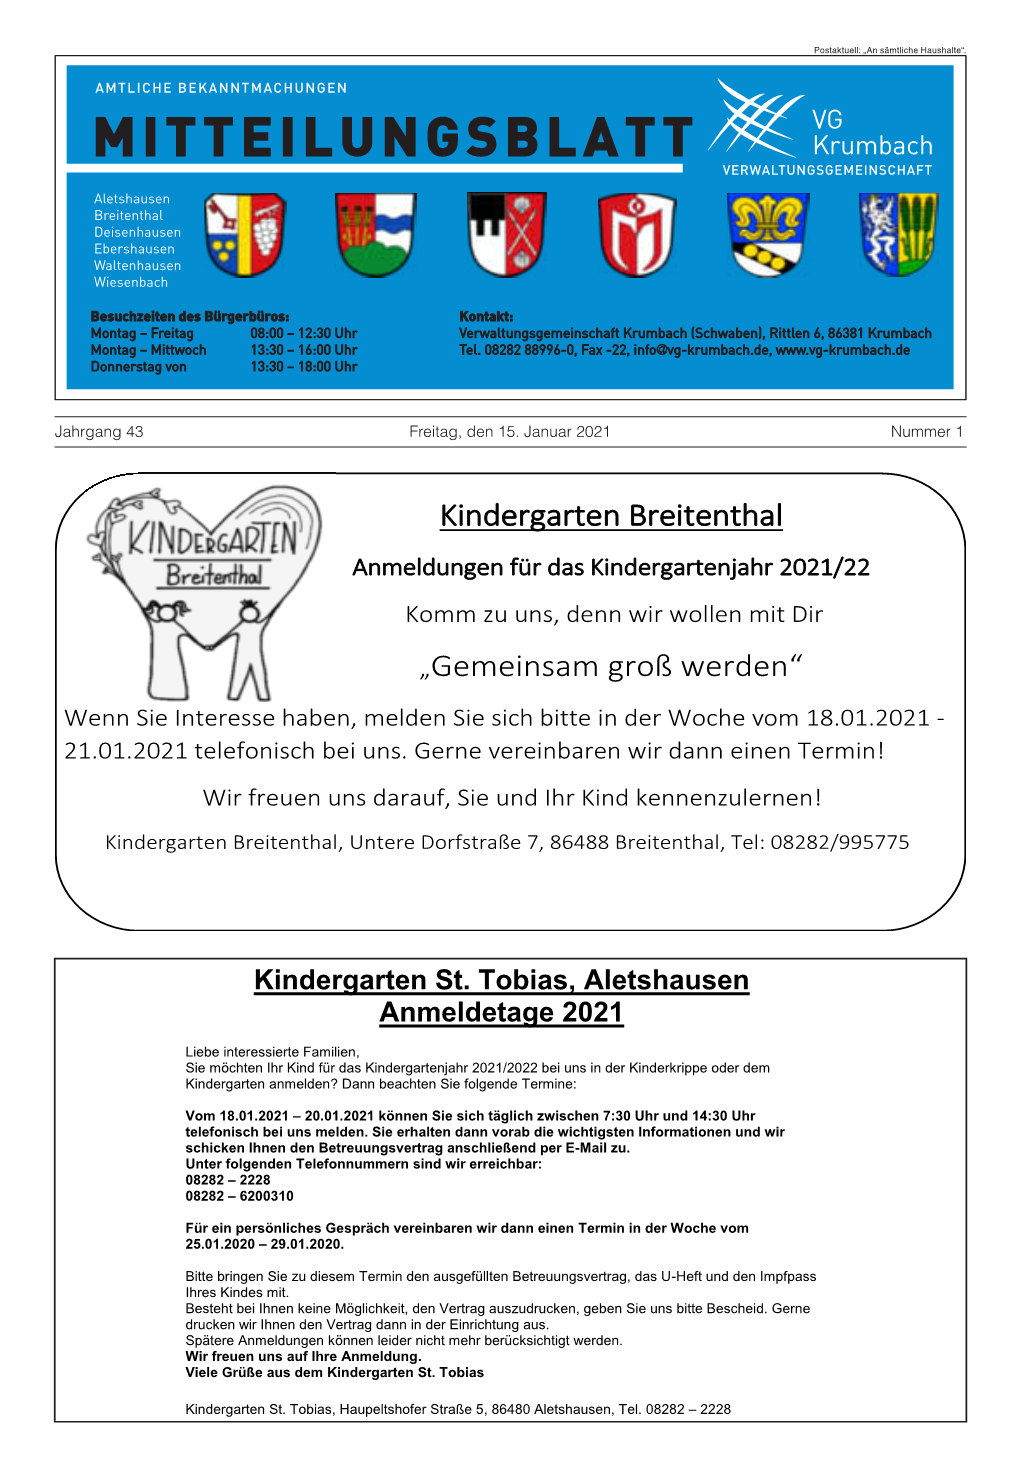 Kindergarten Breitenthal „Gemeinsam Groß Werden“